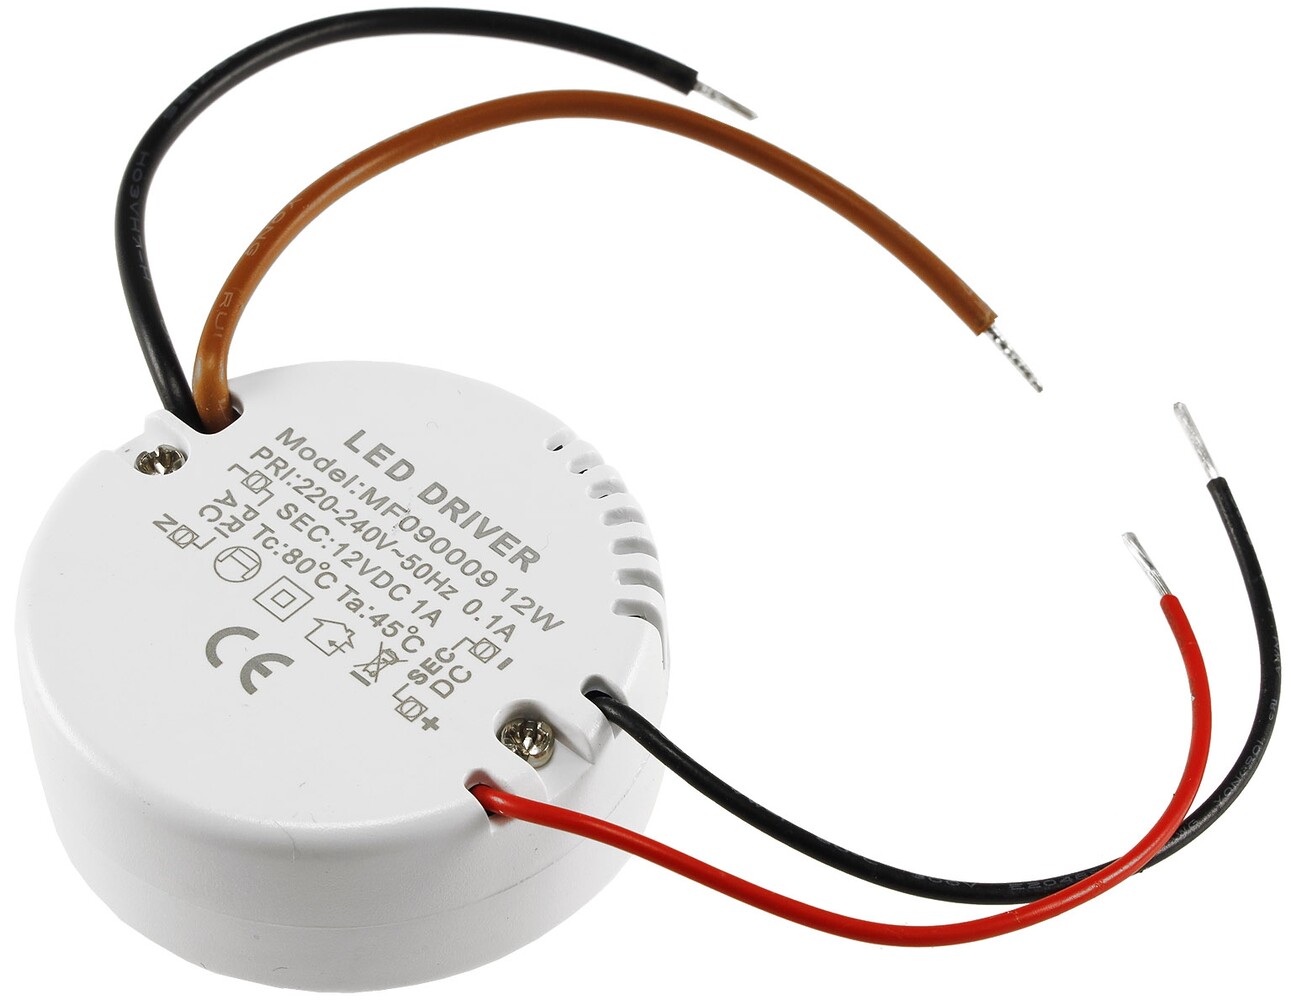 12V 15A 180W LED Trafo Netzteil Transformator Treiber kaufen bei